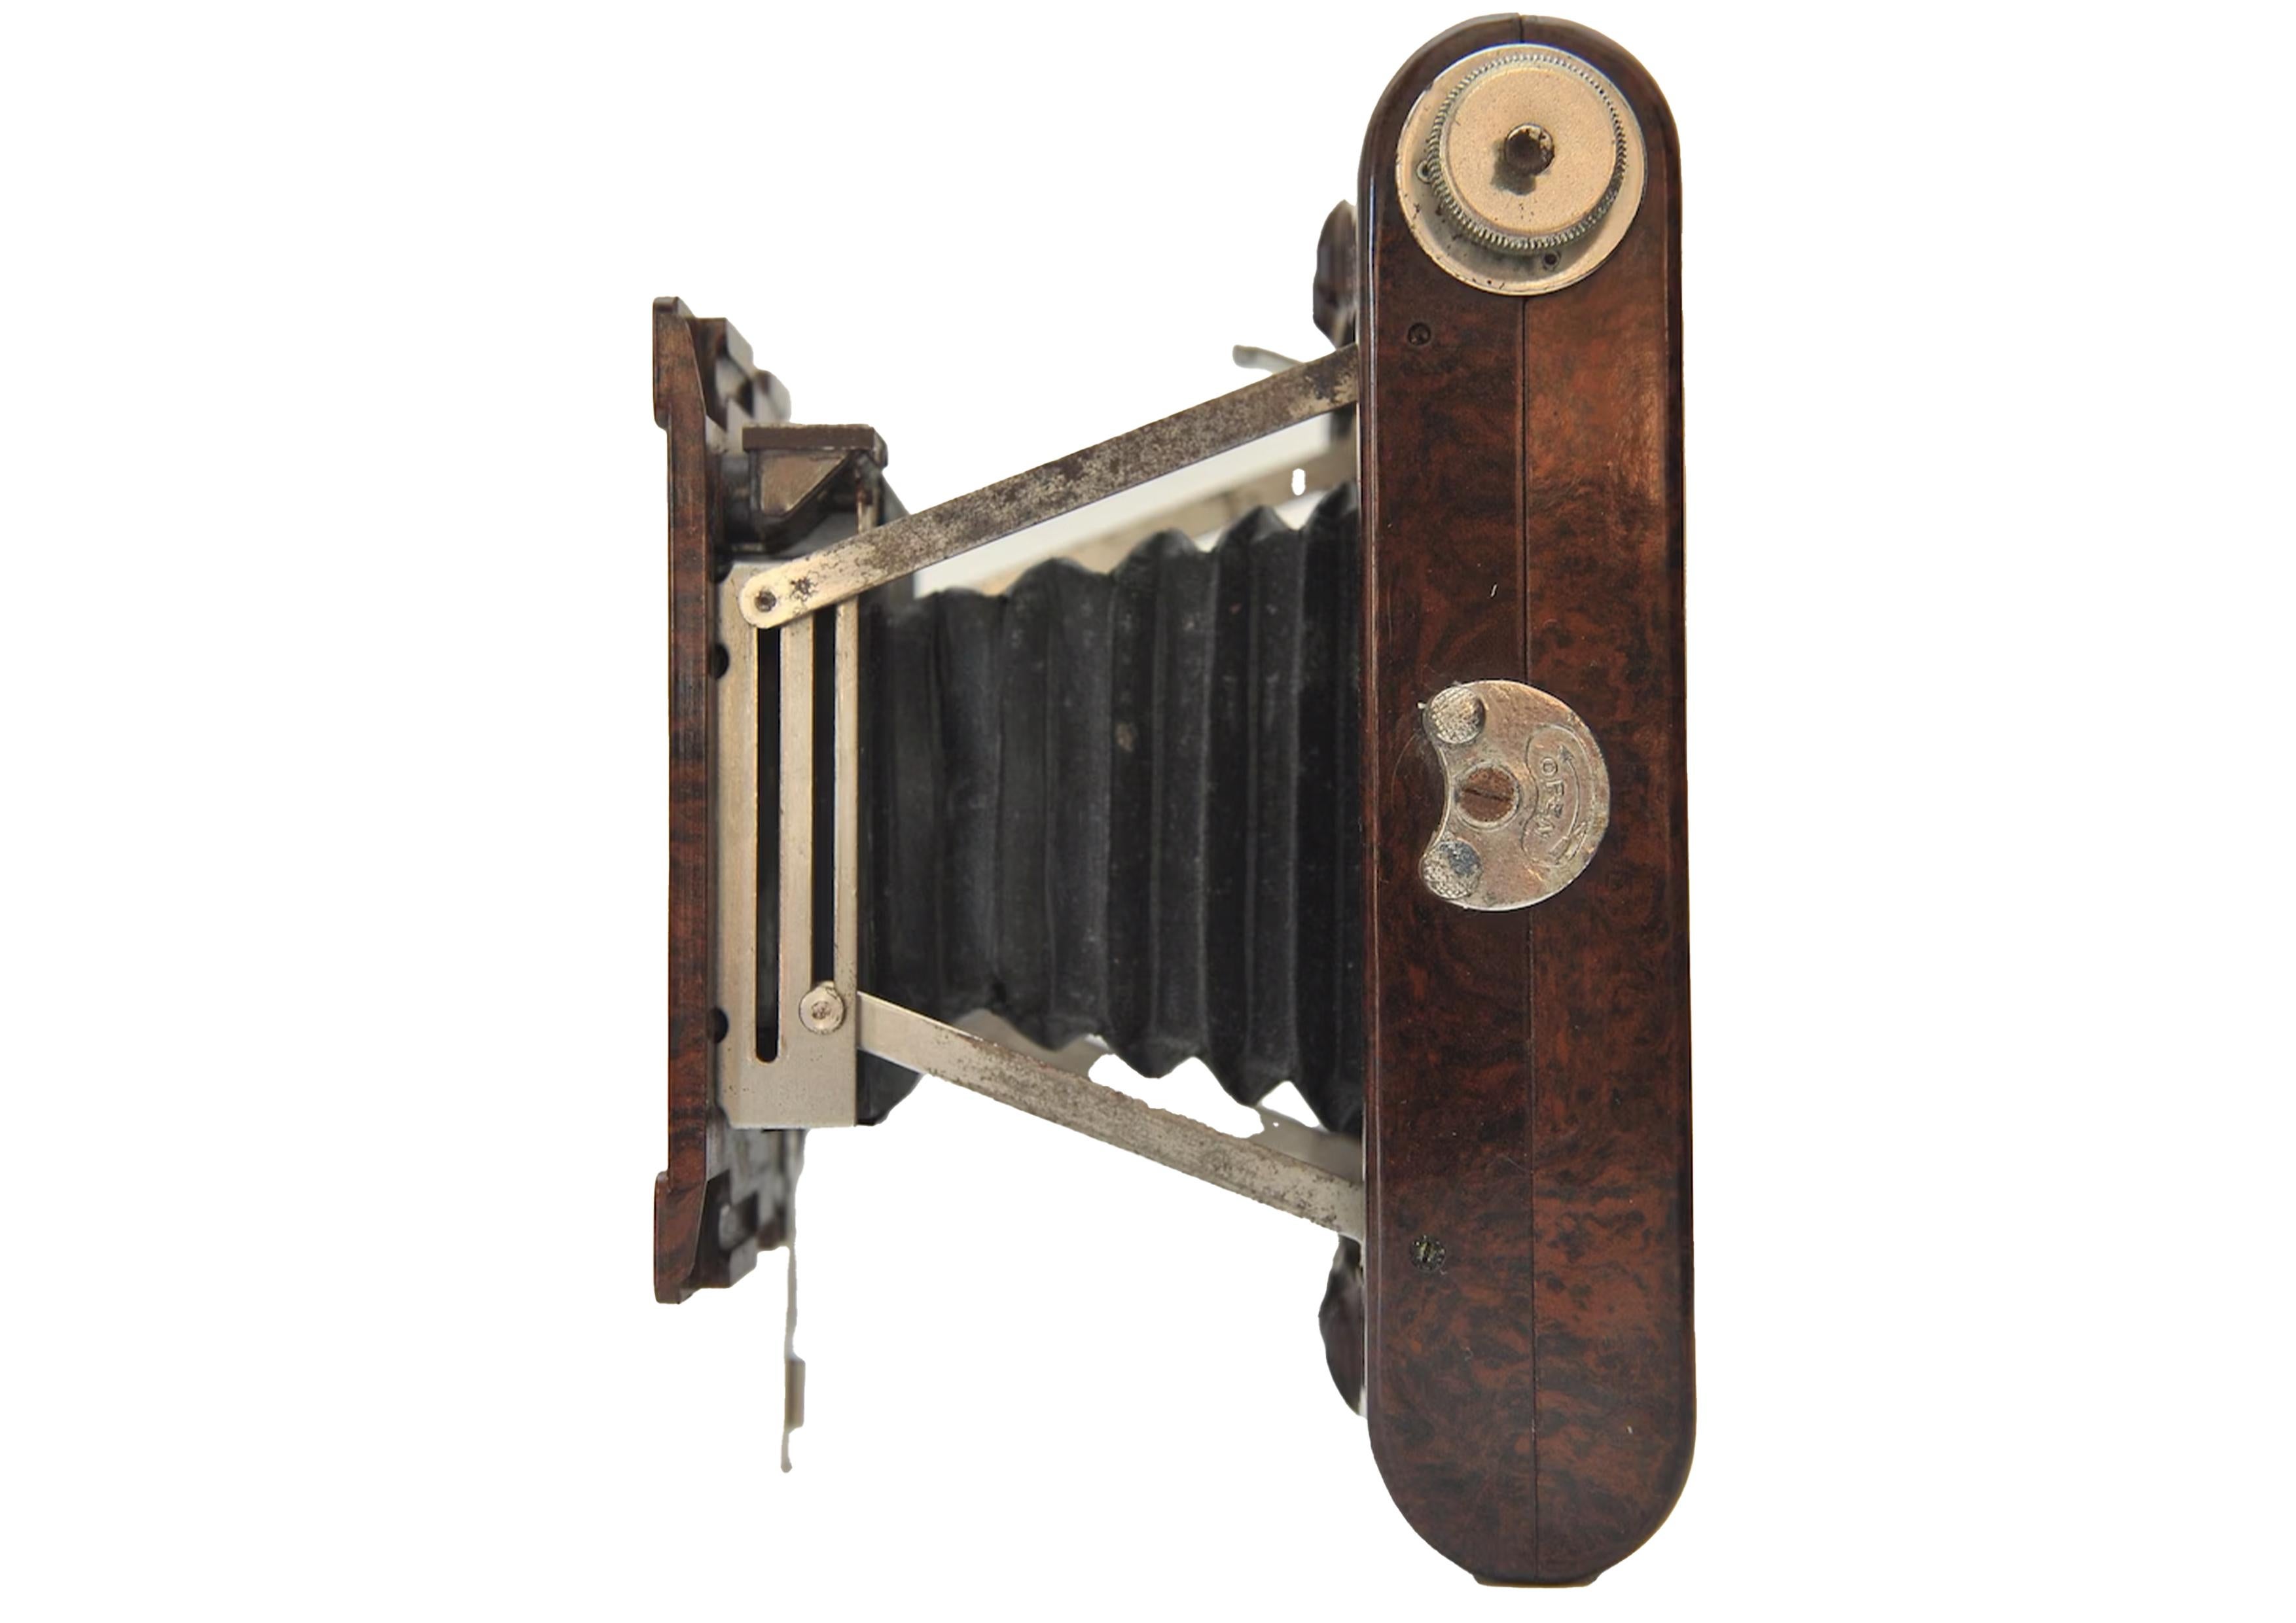 Kodak Nr. 2 Hawkette Marmorierte Bakelit 120 Roll Film Strut Folding Kamera mit Meniskus Objektiv & Rotary Shutter Made in the UK 1930's

Hergestellt aus braunen Bakelit-Formteilen, die von E.K. hergestellt wurden. Cole Ltd (Southend) und wurde in